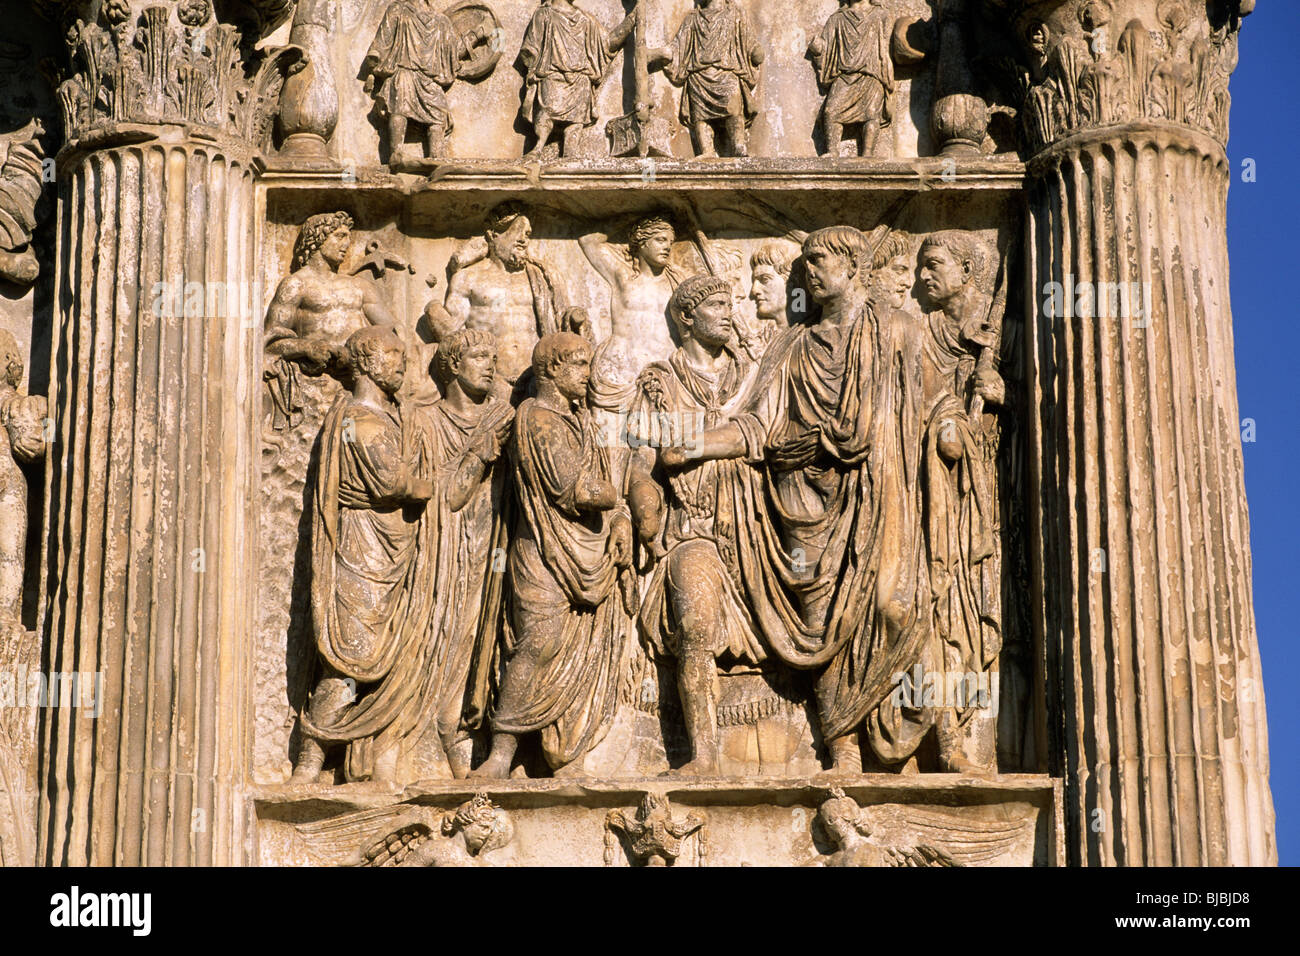 Italie, Campanie, Bénévent, arche de Trajan, bas relief romain de près Banque D'Images